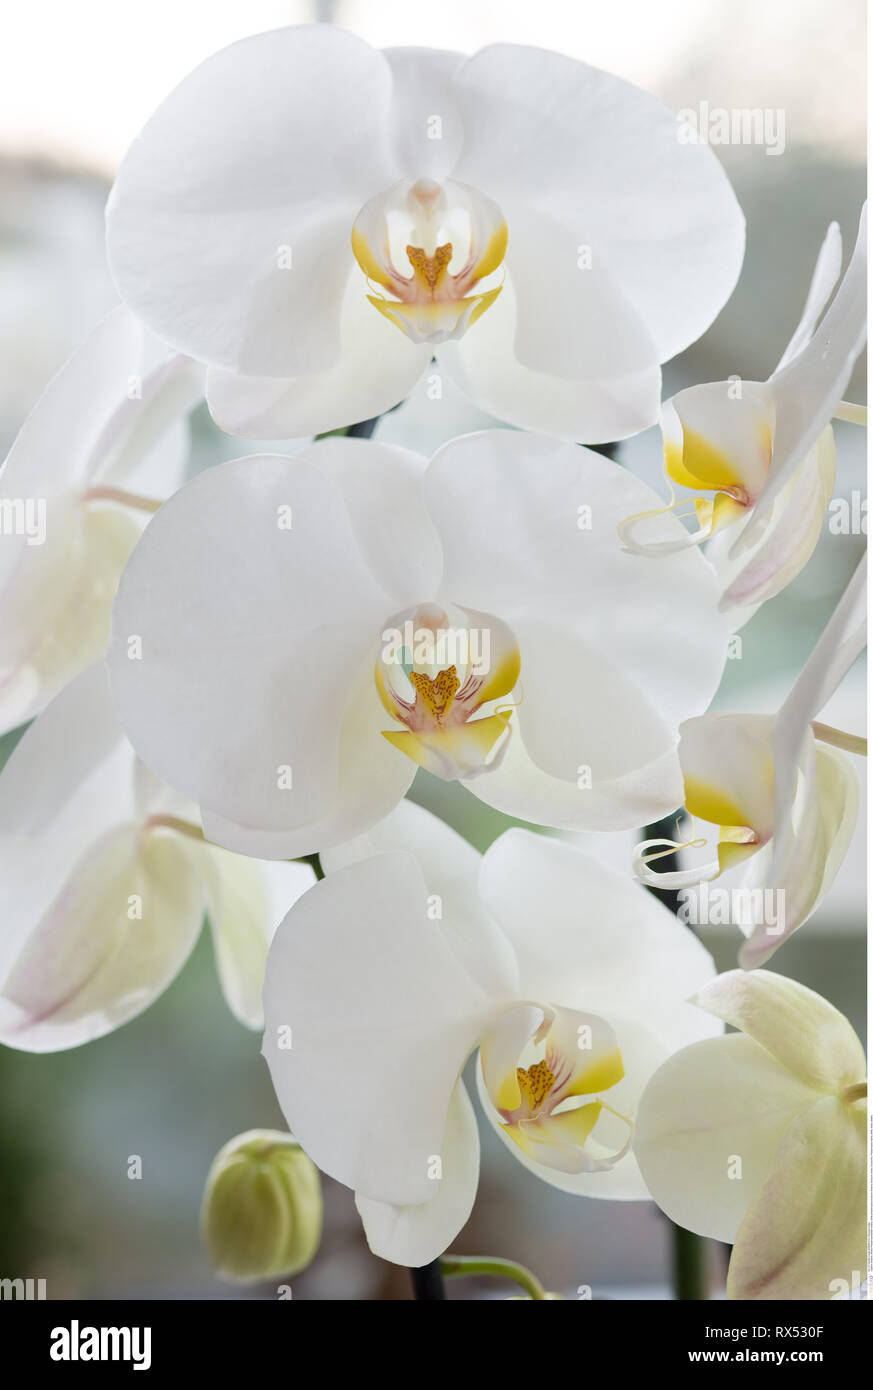 La botanica, bianco phalaenopsis blossom, attenzione! Per Greetingcard-Use / Postcard-Use nei Paesi di lingua tedesca talune restrizioni possono applicare Foto Stock